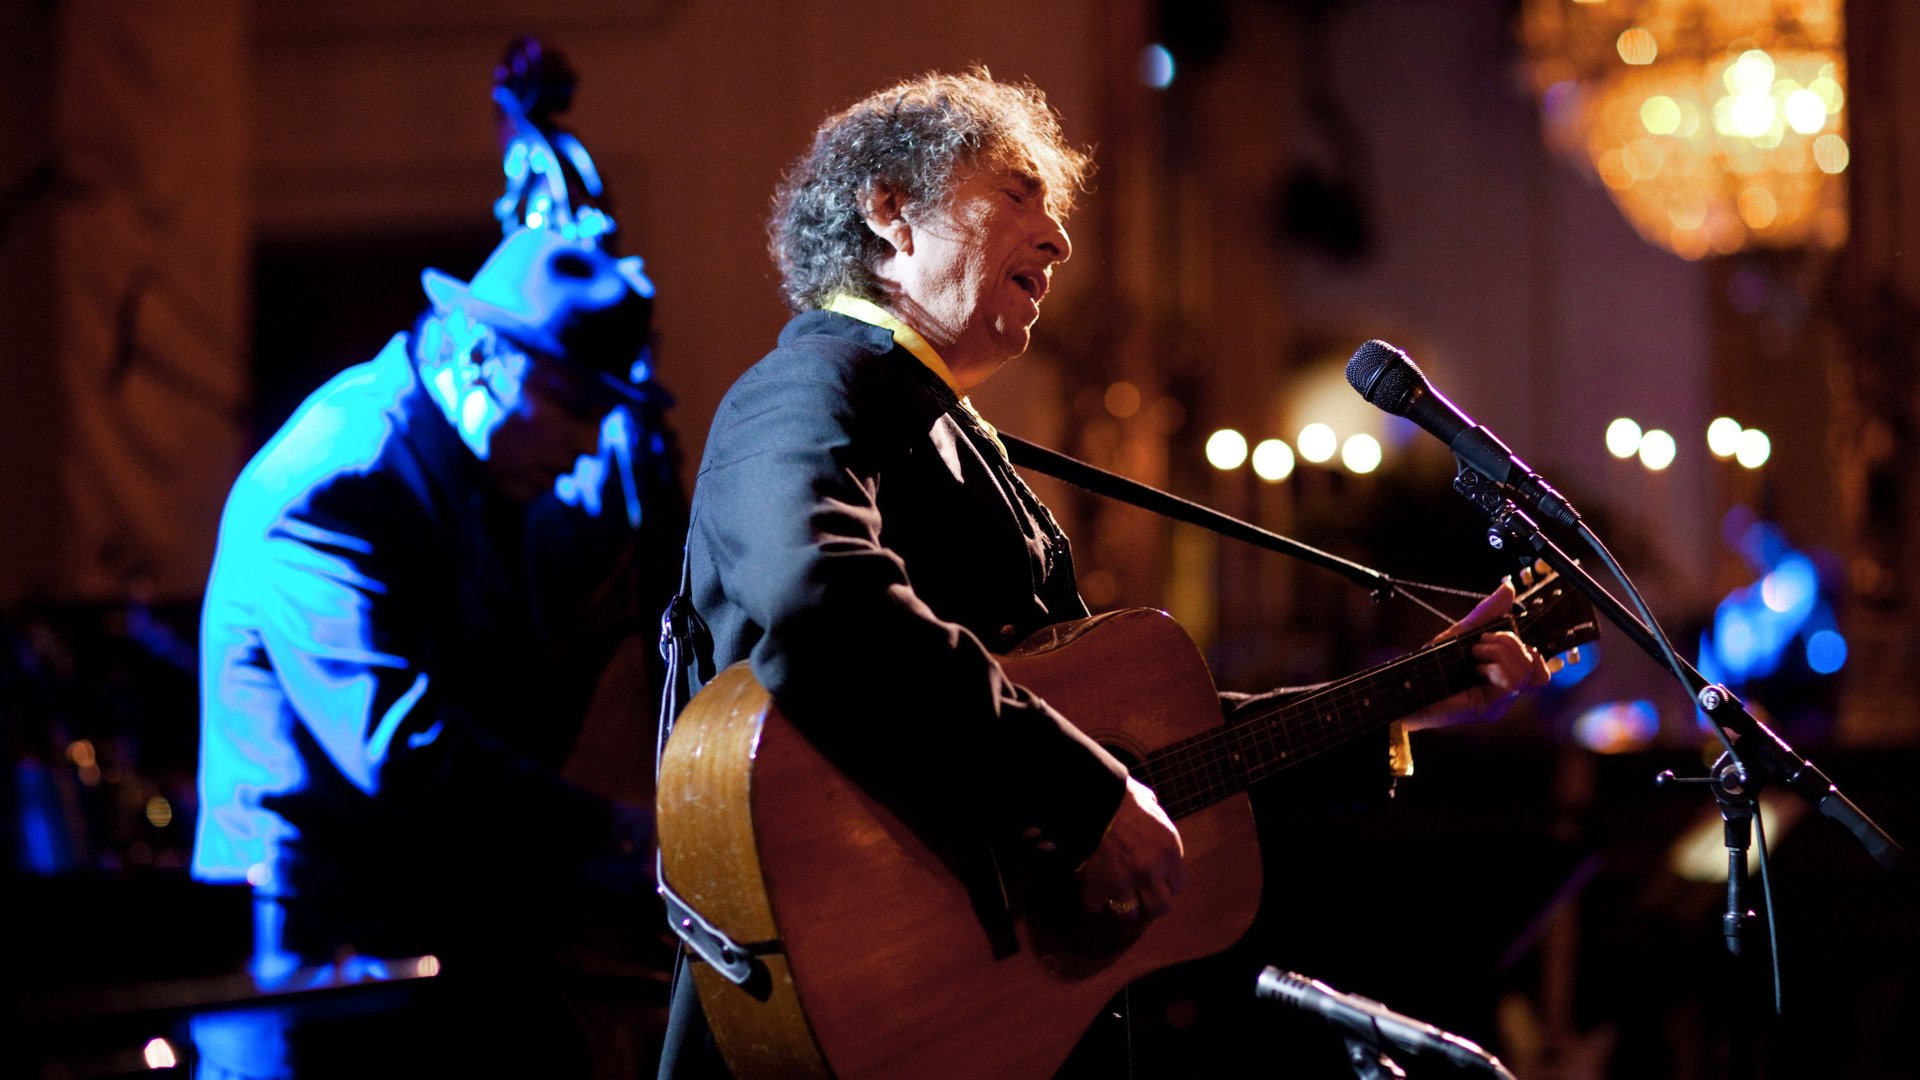 Concert de Bob Dylan a Barcelona: recordem els 8 moments més polèmics de la seva carrera